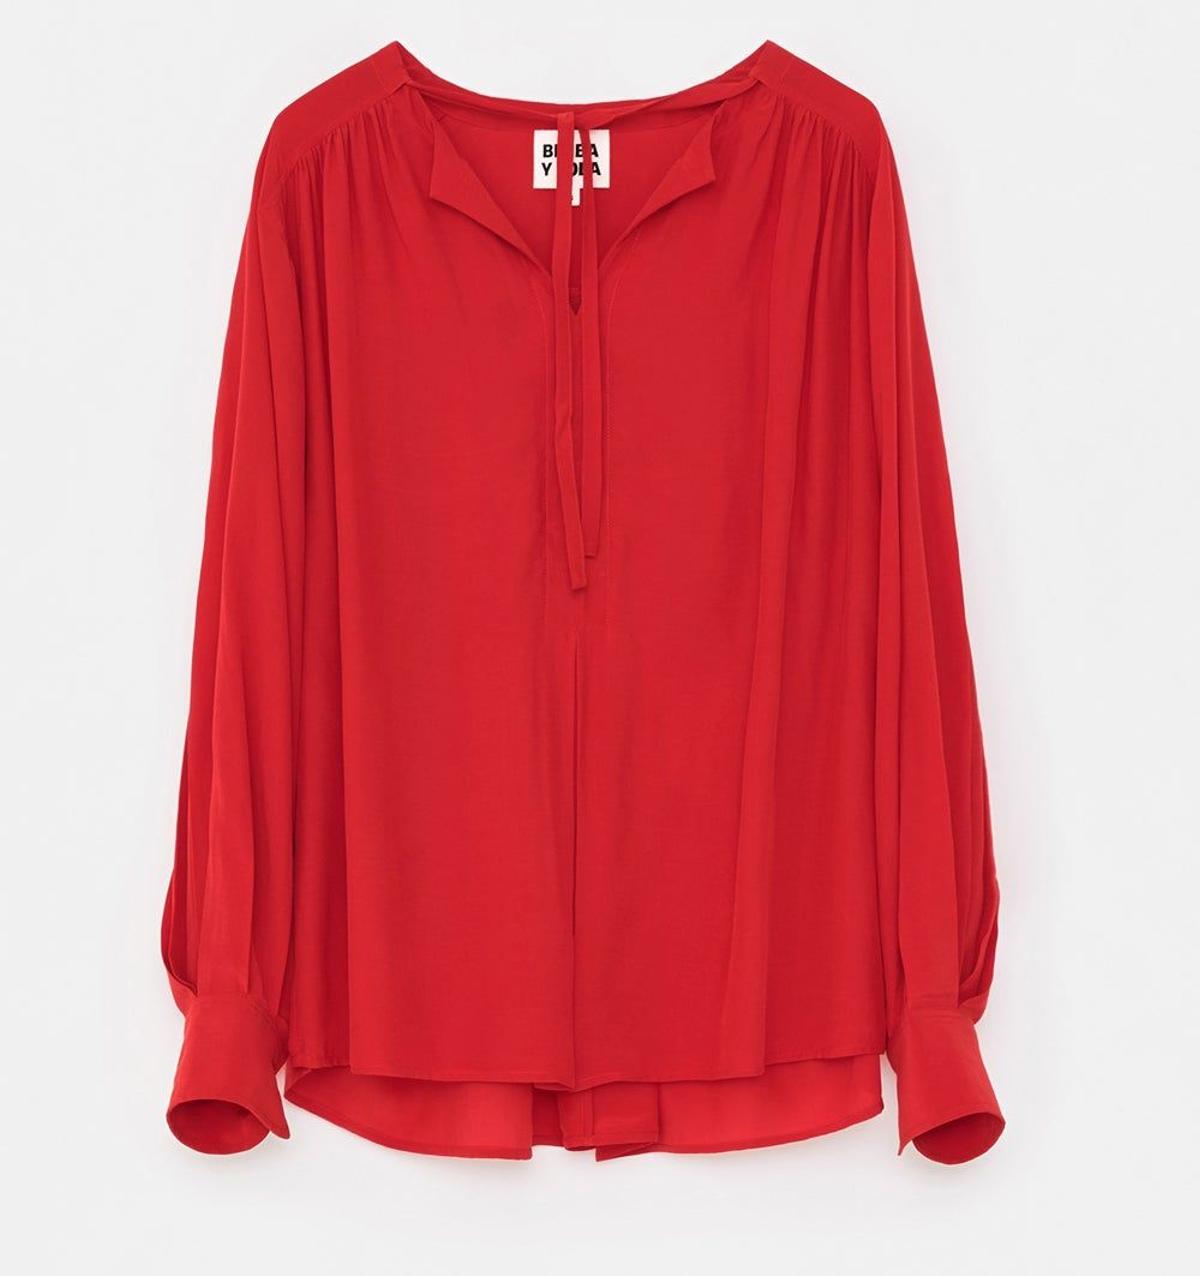 Blusa roja (precio: 50 euros)